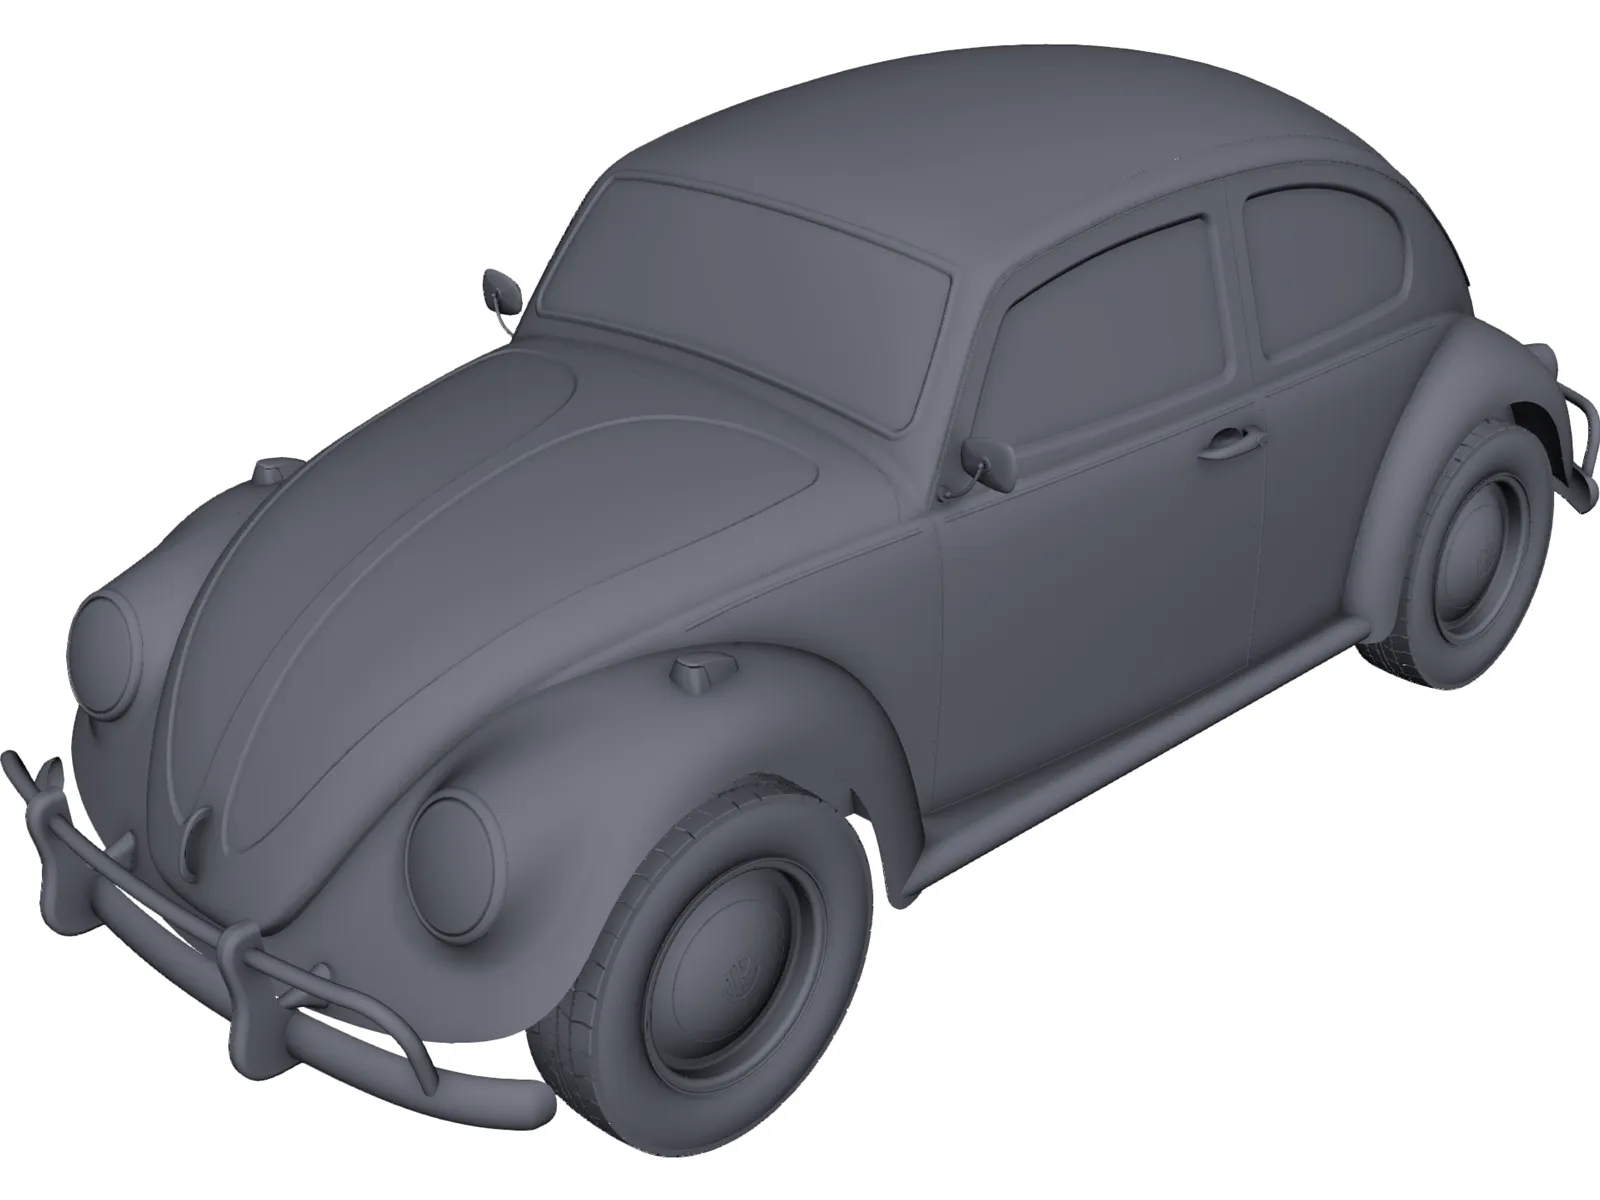 Volkswagen Beetle CAD Model (1963) - 3DCADBrowser